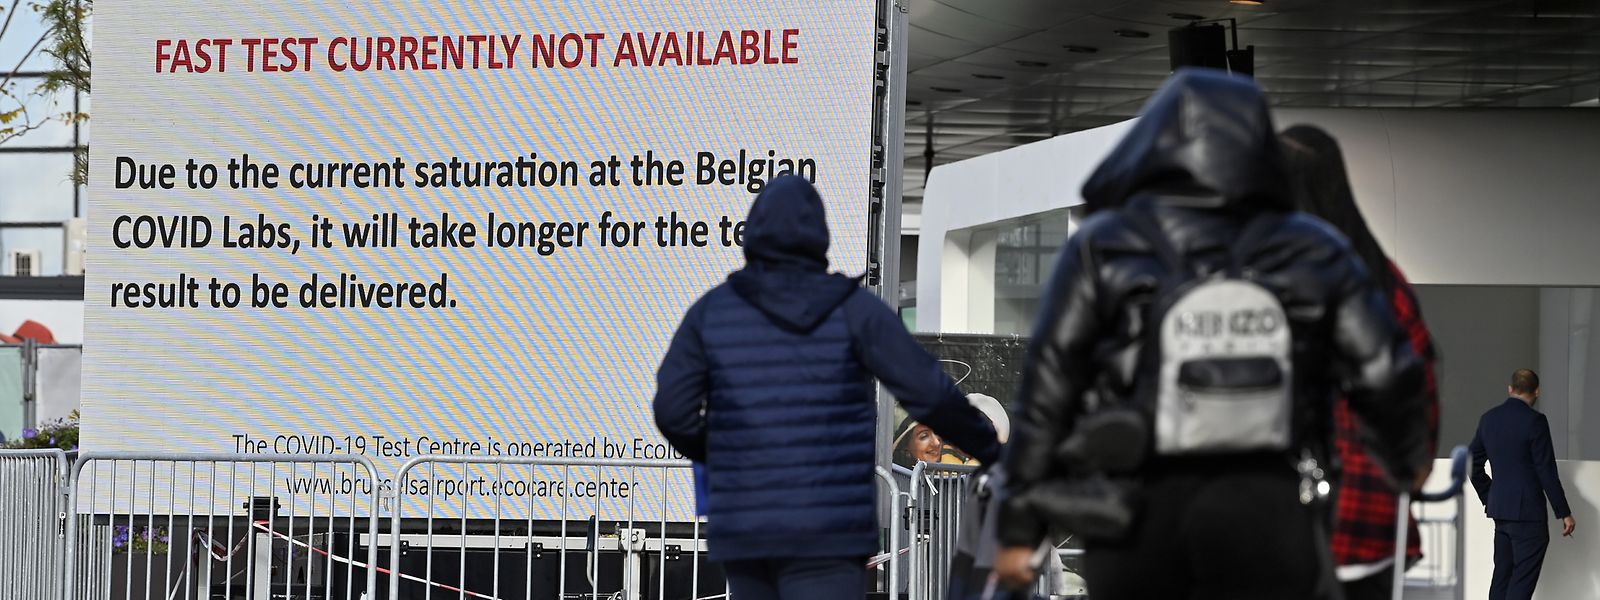 Belgien bleibt ein Brennpunkt der Corona-Pandemie. Am Flughafen Zaventem können aufgrund überlasteter Labore derzeit keine Corona-Schnelltests durchgeführt werden.